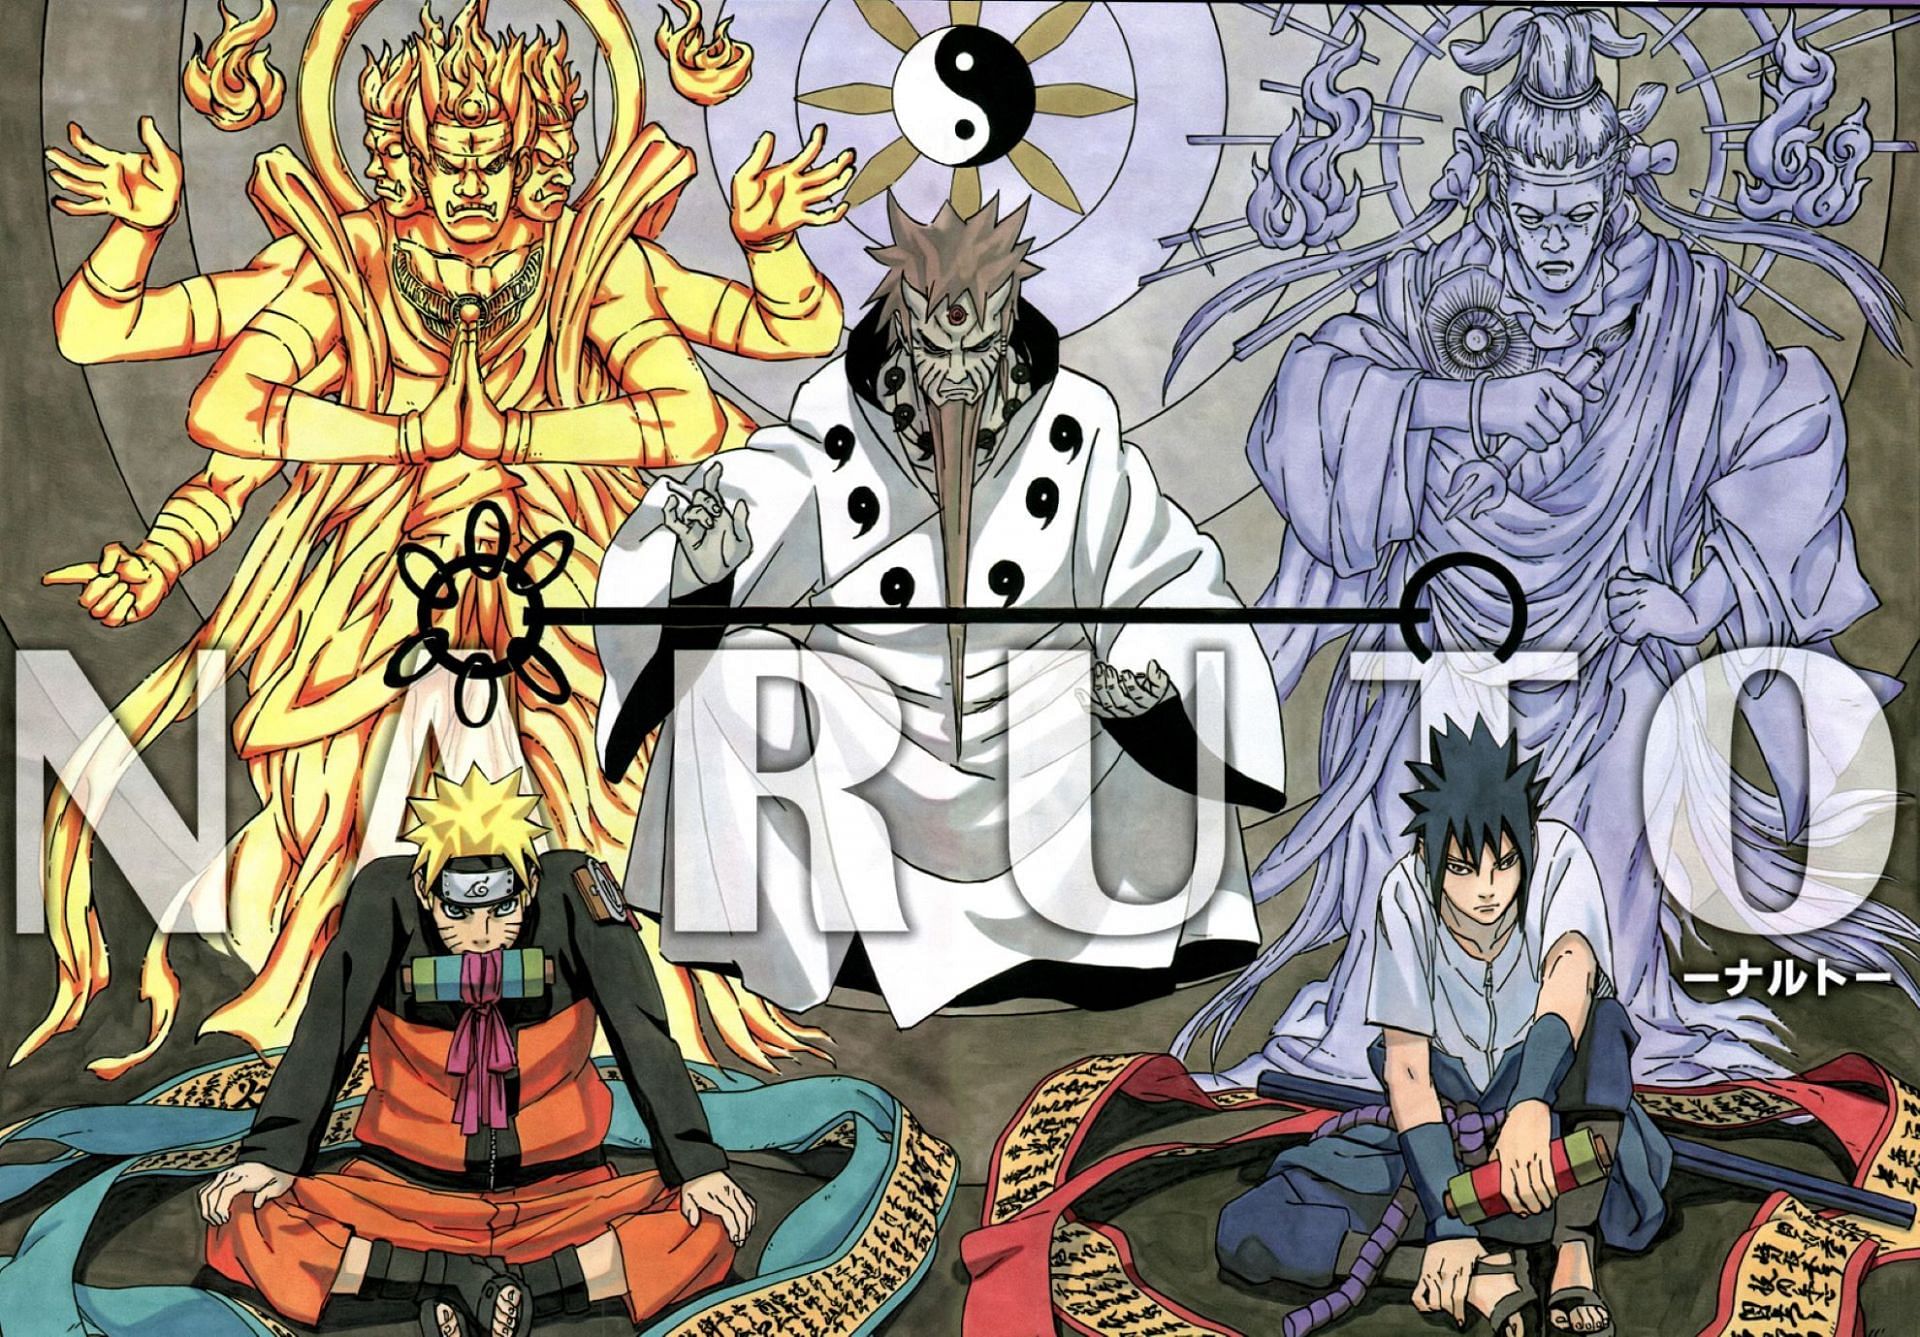 Naruto and Sasuke reincarnation manga cover colorized (Image via Masashi Kishimoto/Shueisha)